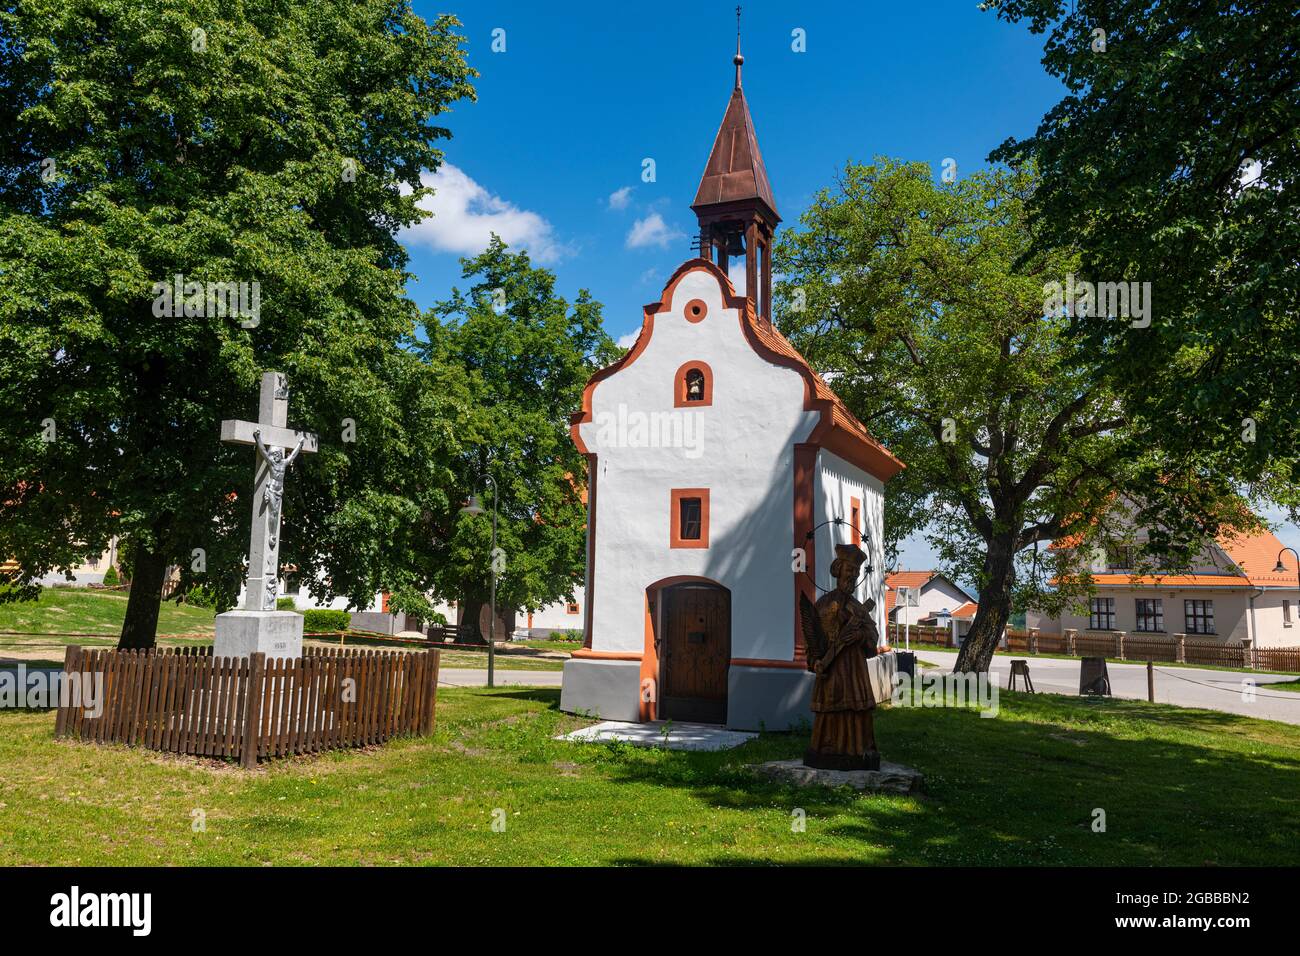 Le village historique de Holasovice, site classé au patrimoine mondial de l'UNESCO, Bohême du Sud, République tchèque, Europe Banque D'Images